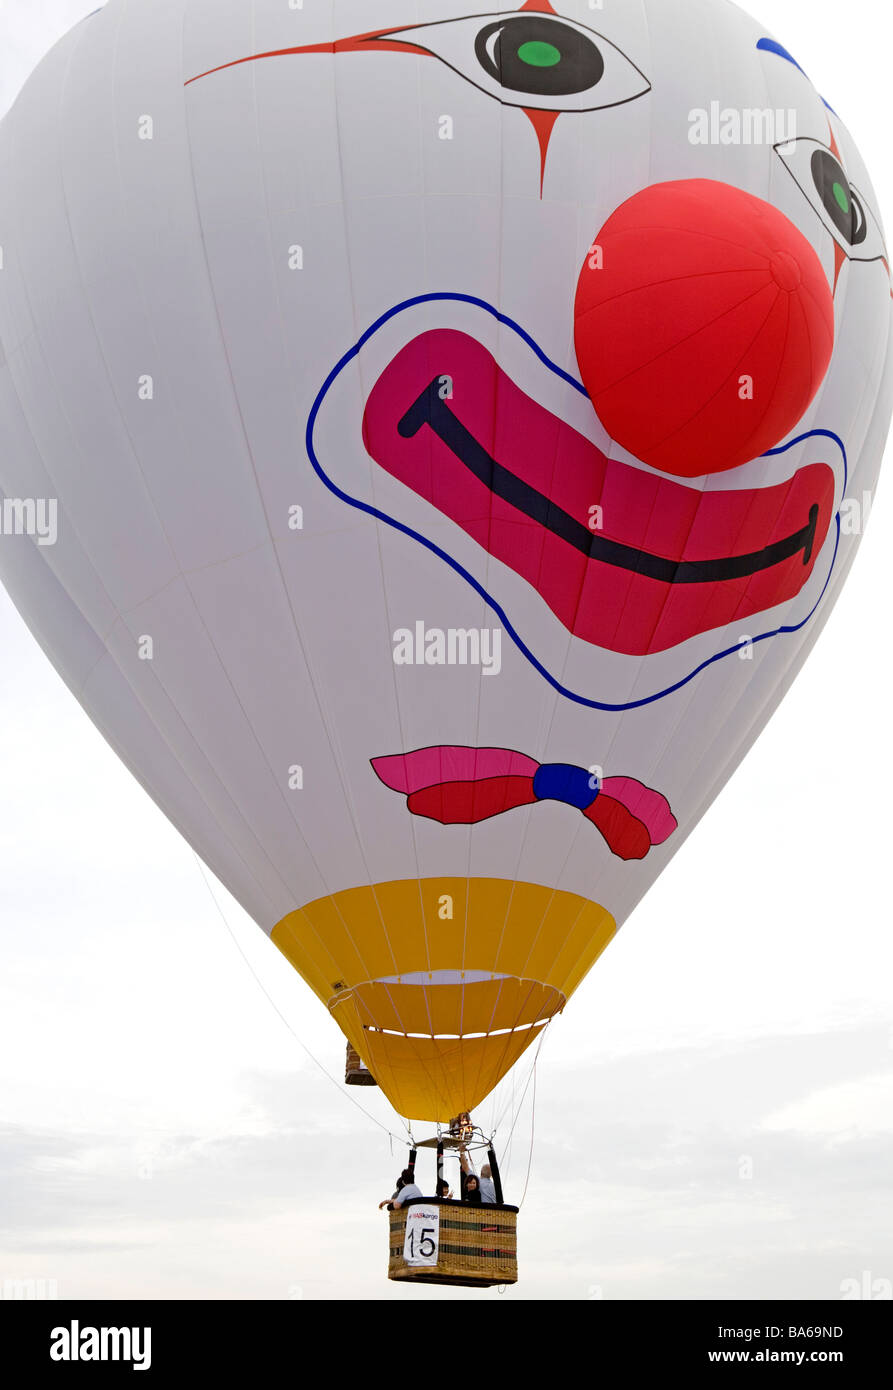 Hot air clown balloon Stock Photo